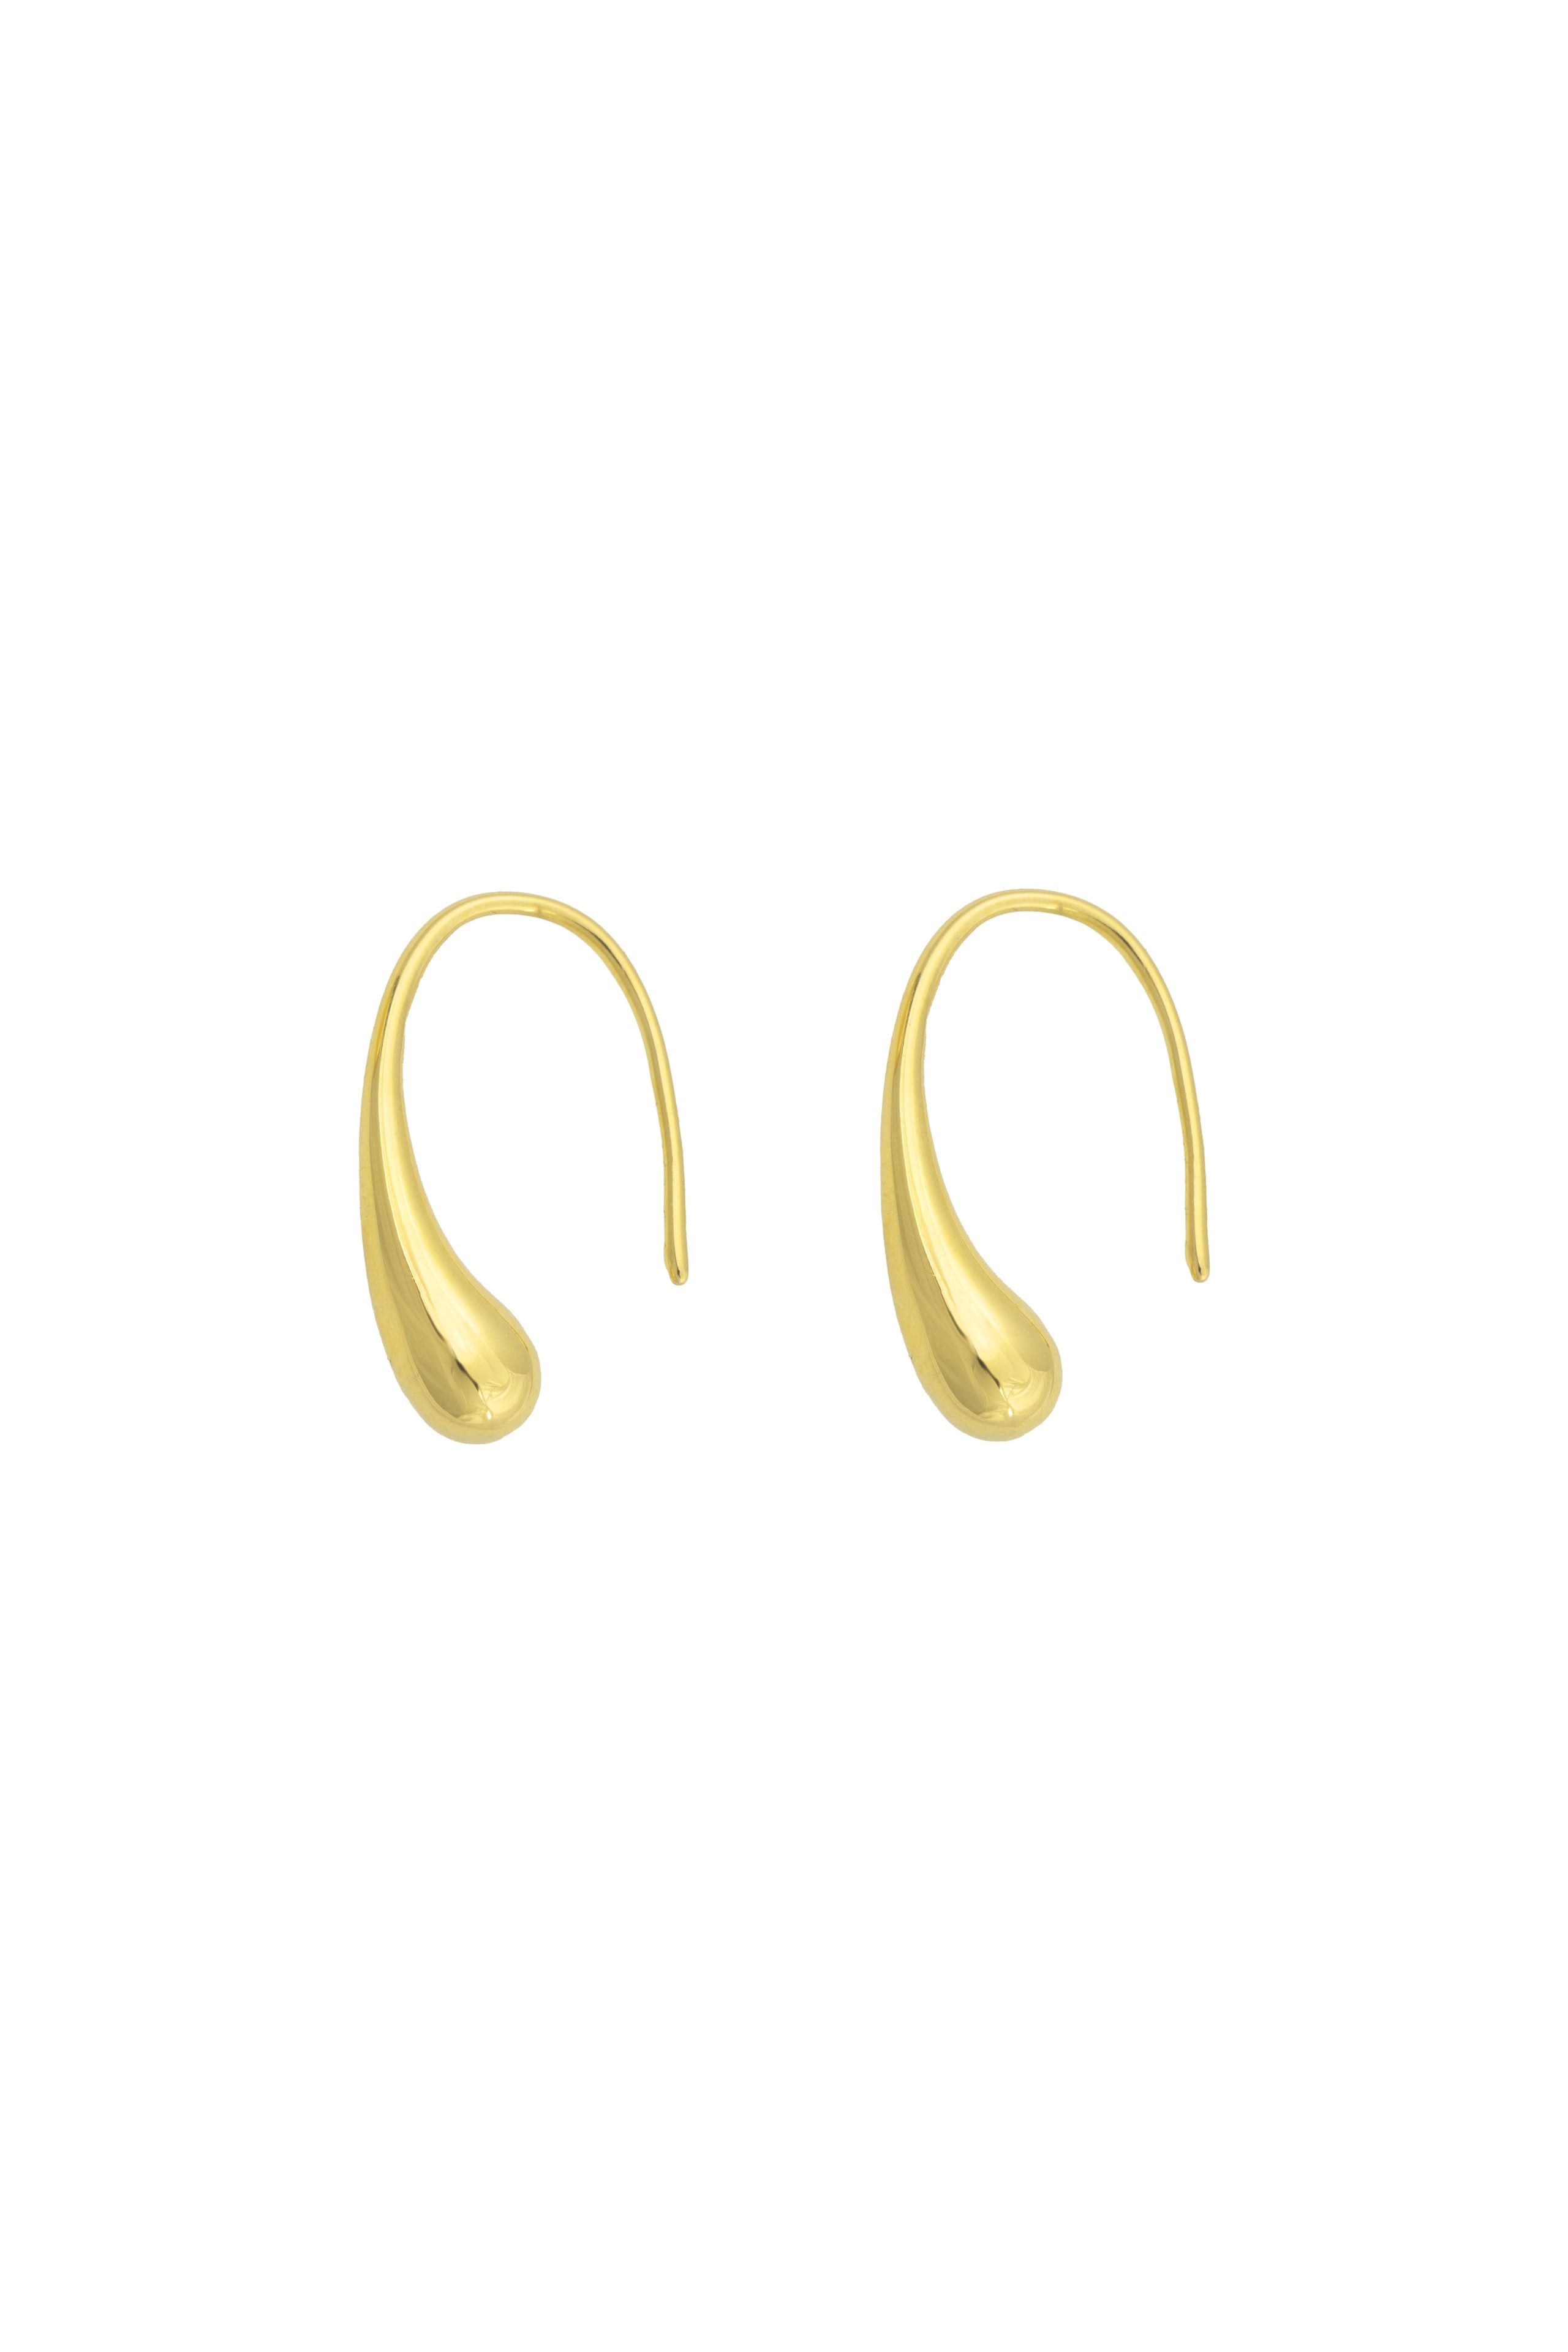 Melt Earrings - Gold